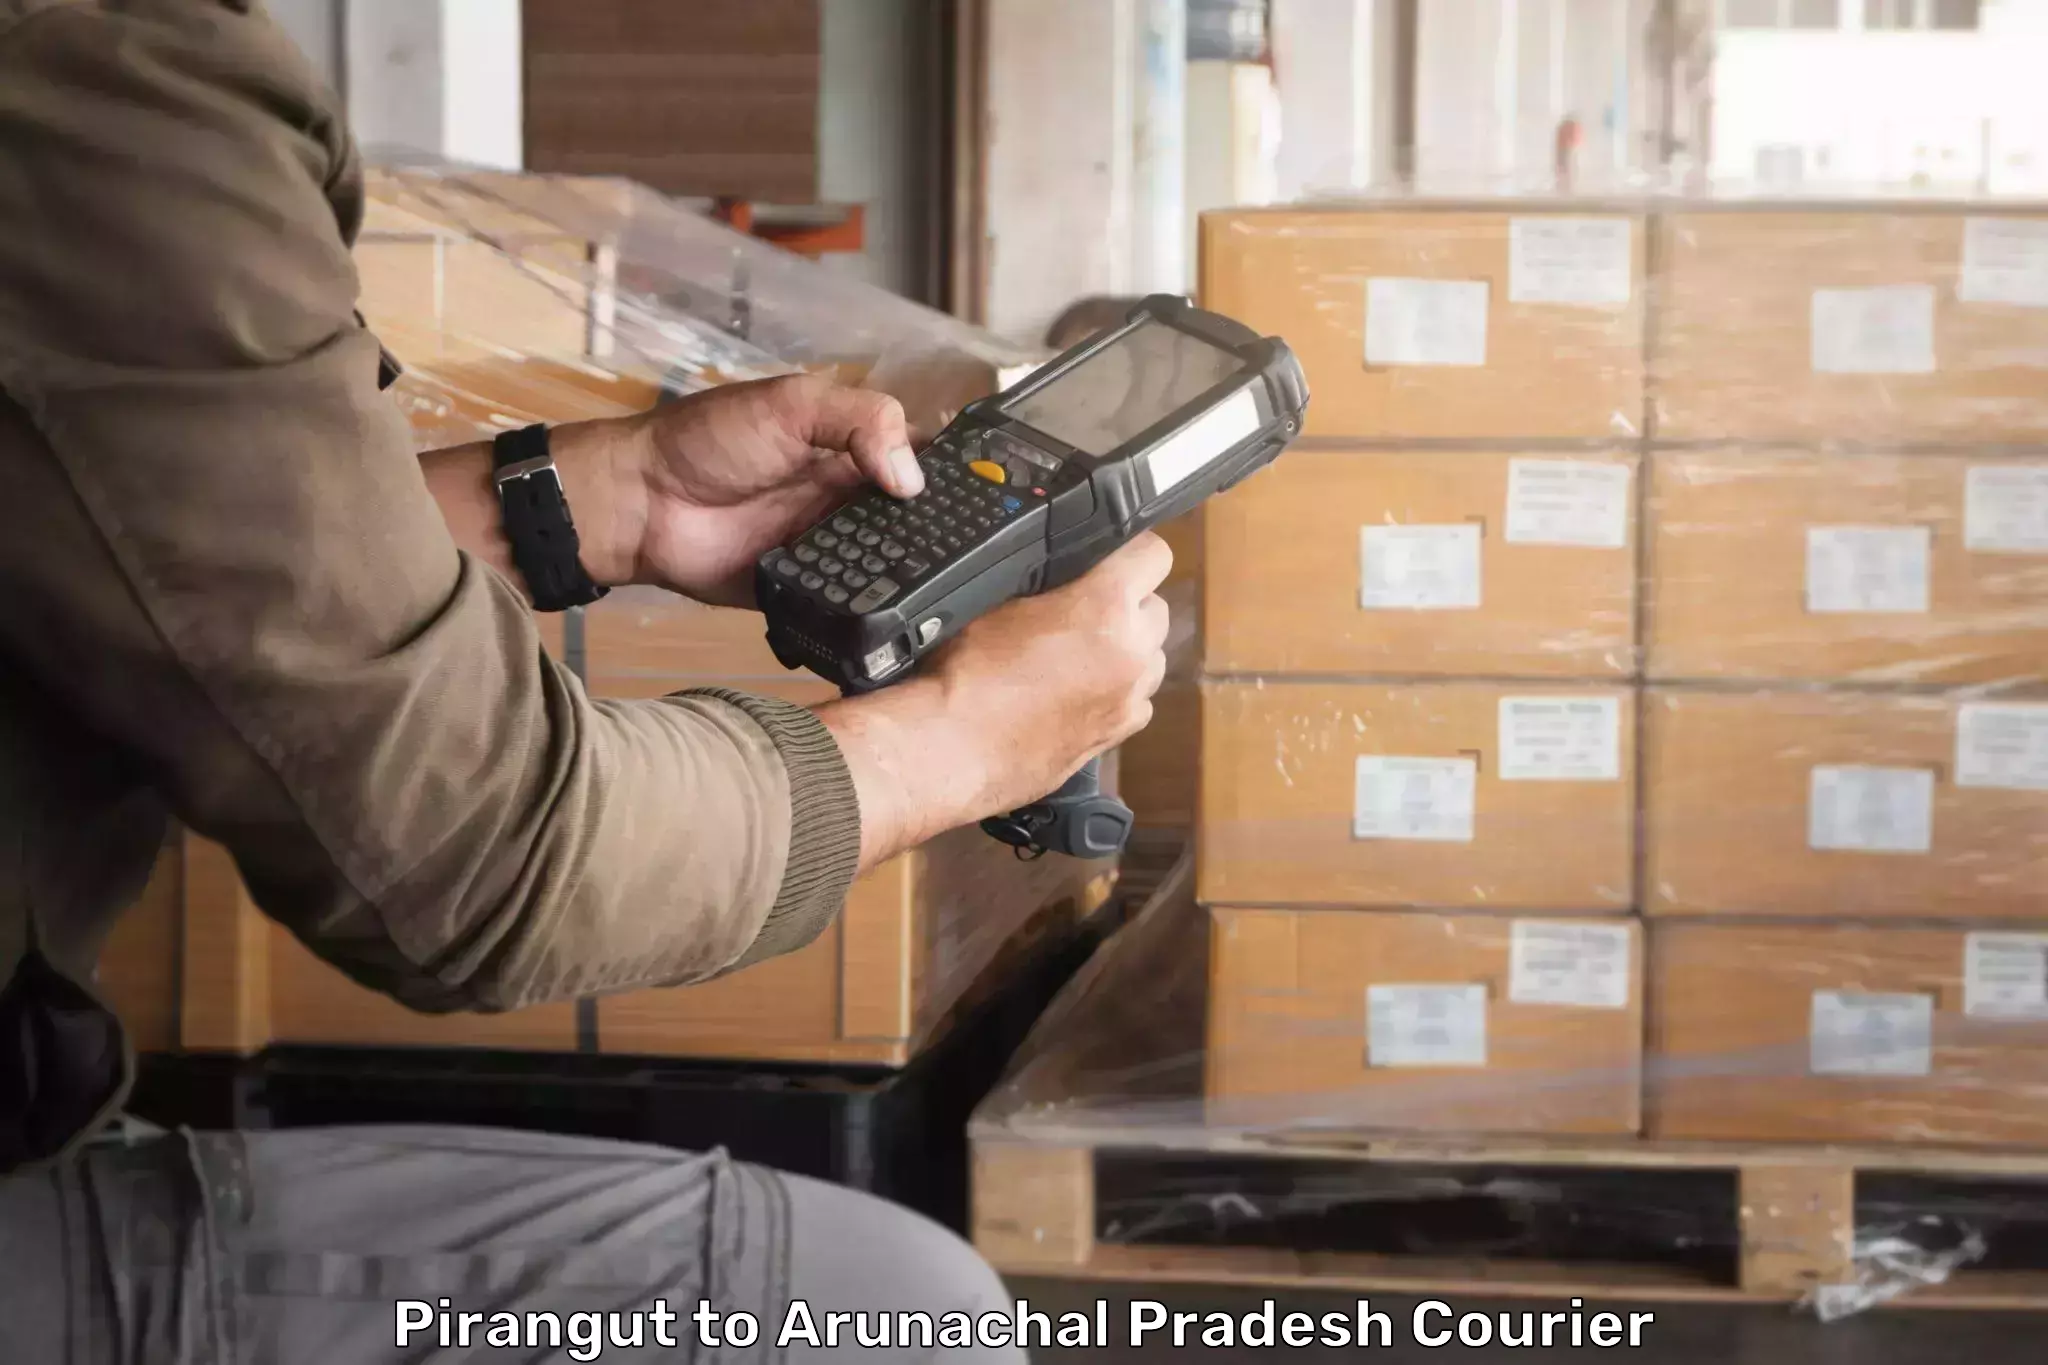 Courier service comparison Pirangut to Lohit